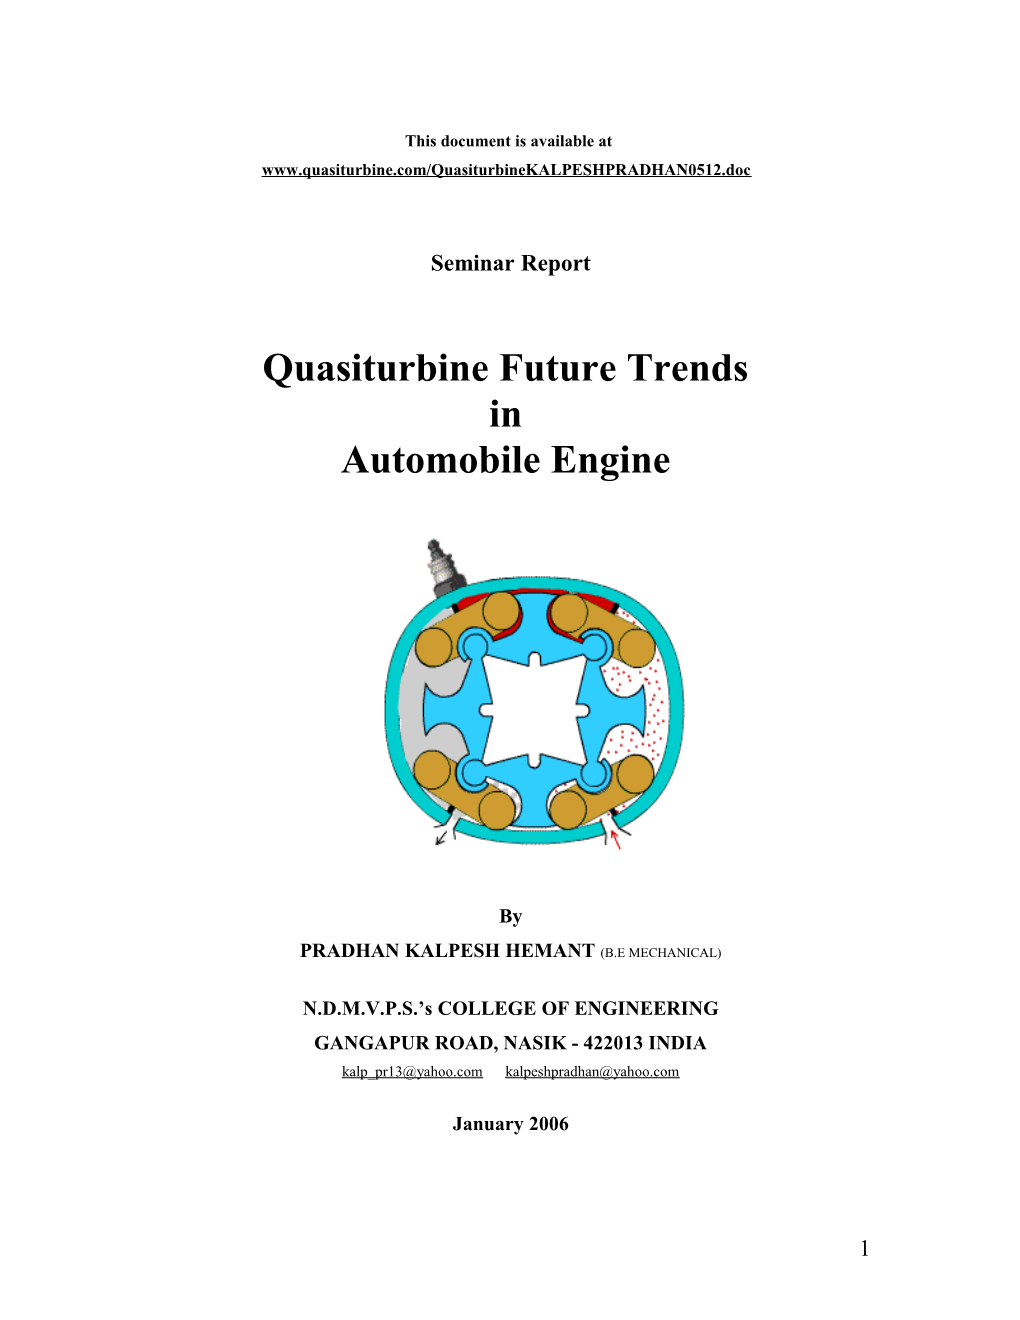 Quasiturbine Future Trends in Automobile Engine